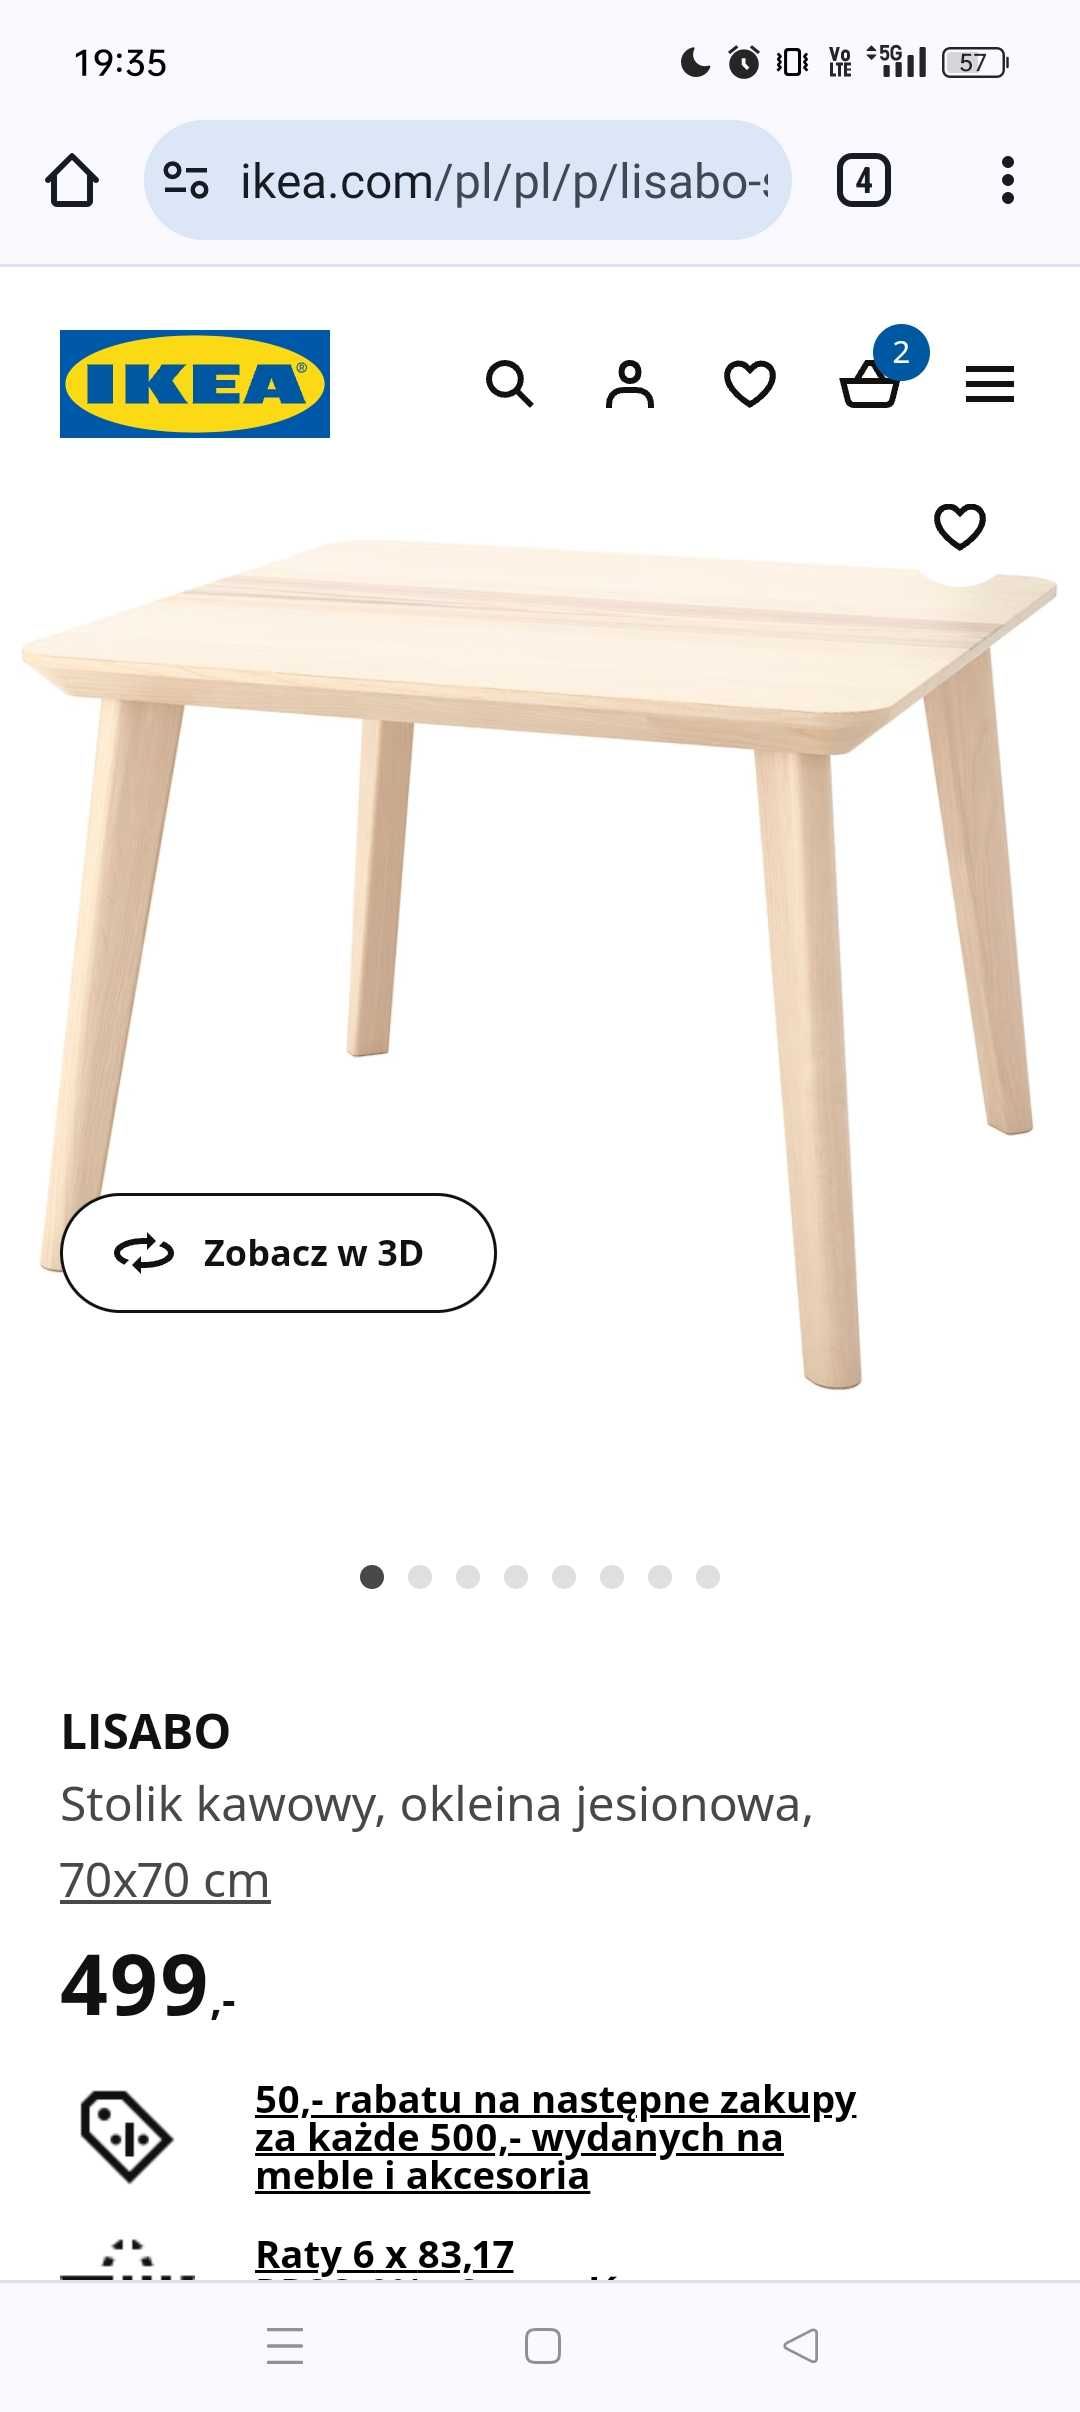 Stolik kawowy Ikea Lisabo 70x70 ława